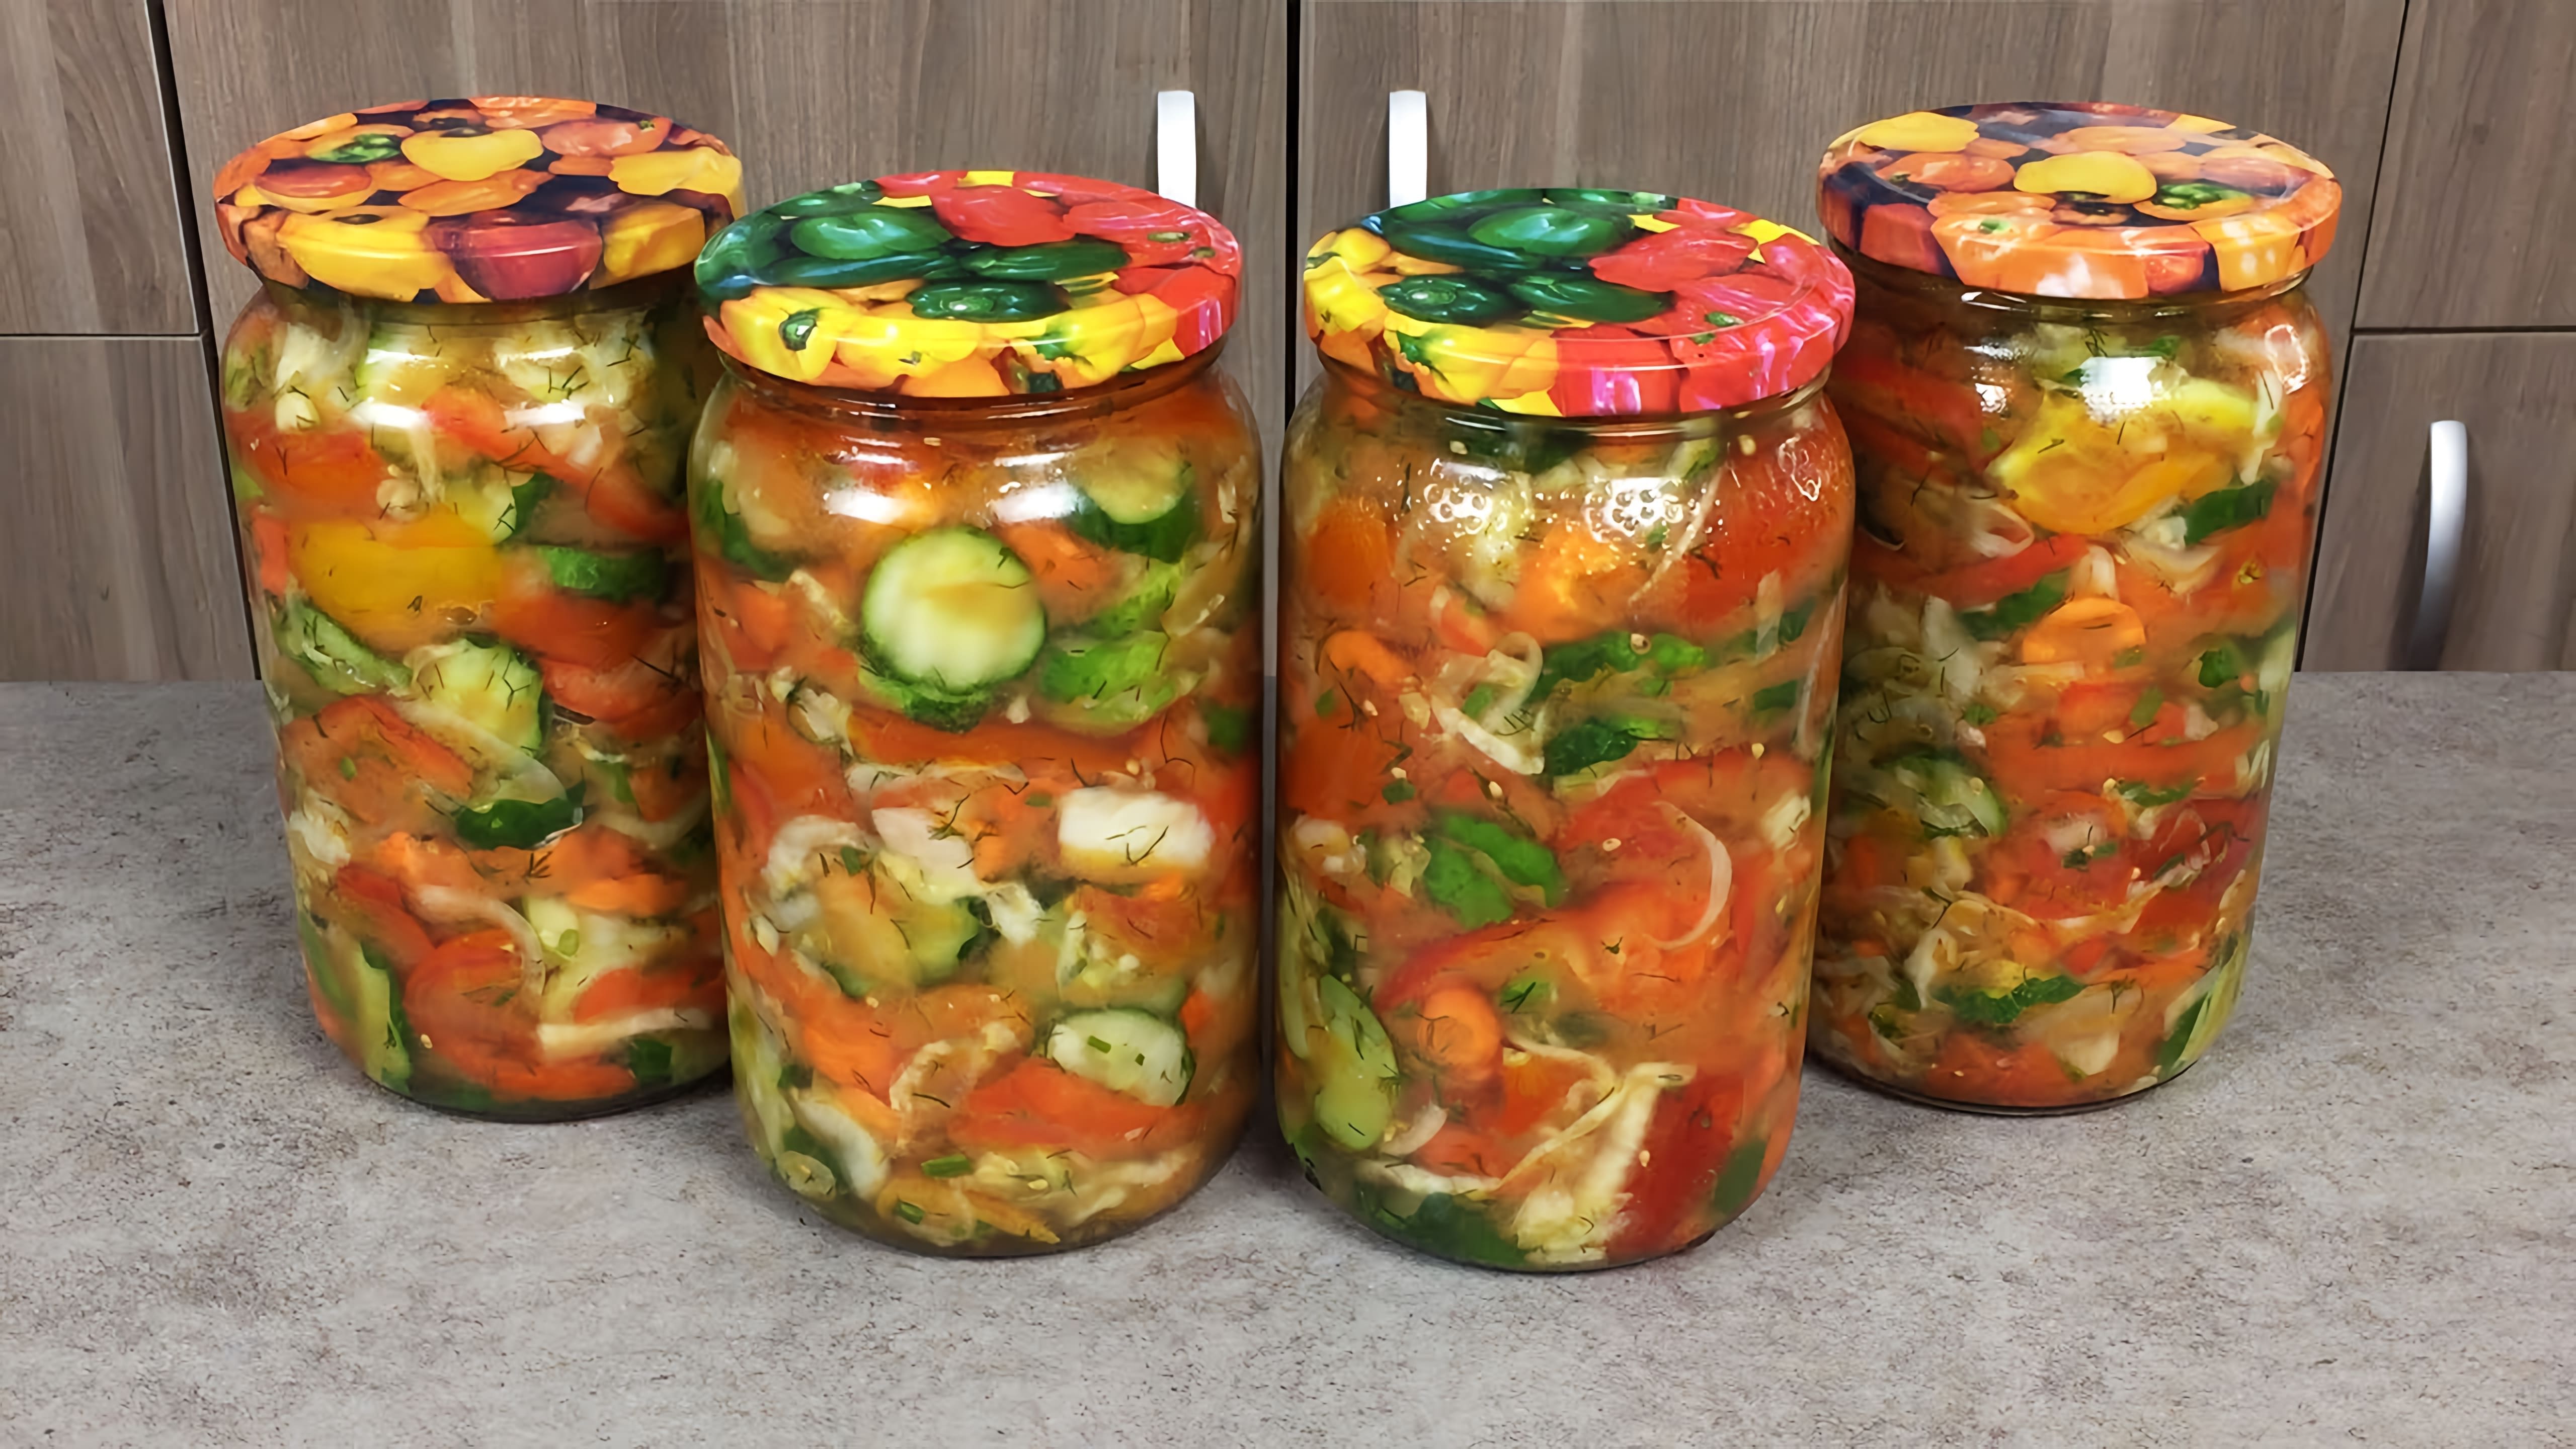 Видео посвящено приготовлению Кубанского салата, традиционного русского маринованного овощного салата